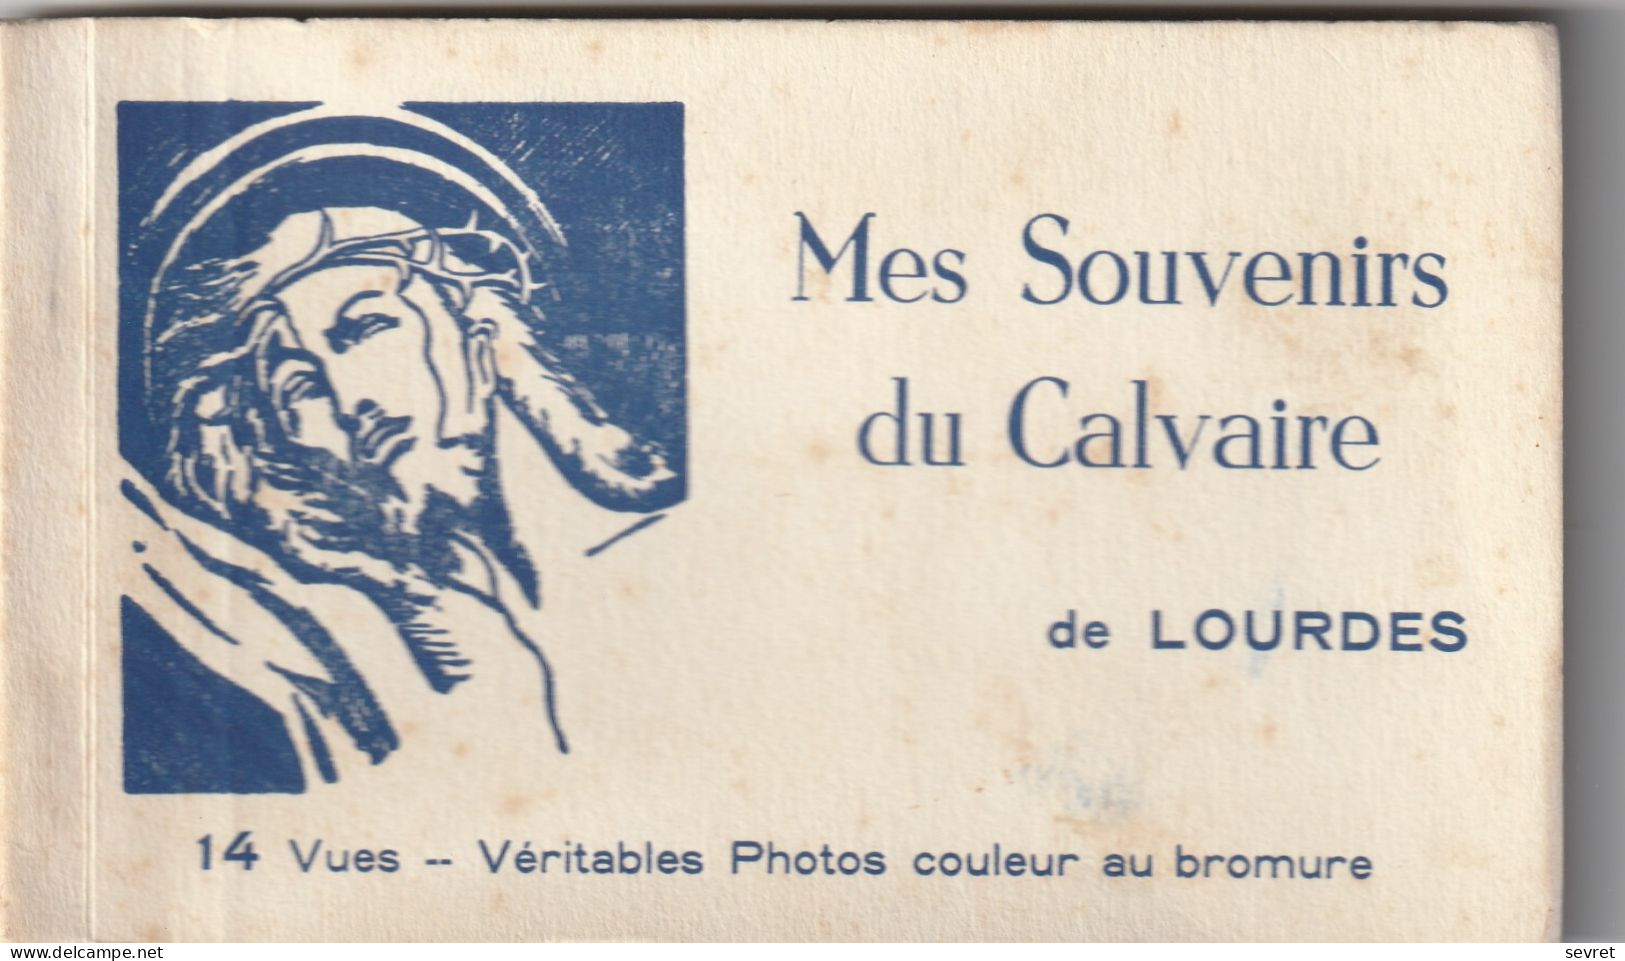 Carnet De 14 Vues 15x9 - LOURDES. Mes Souvenirs Du Calvaire. Véritables Photos Couleur Au Bromure - Lieux Saints